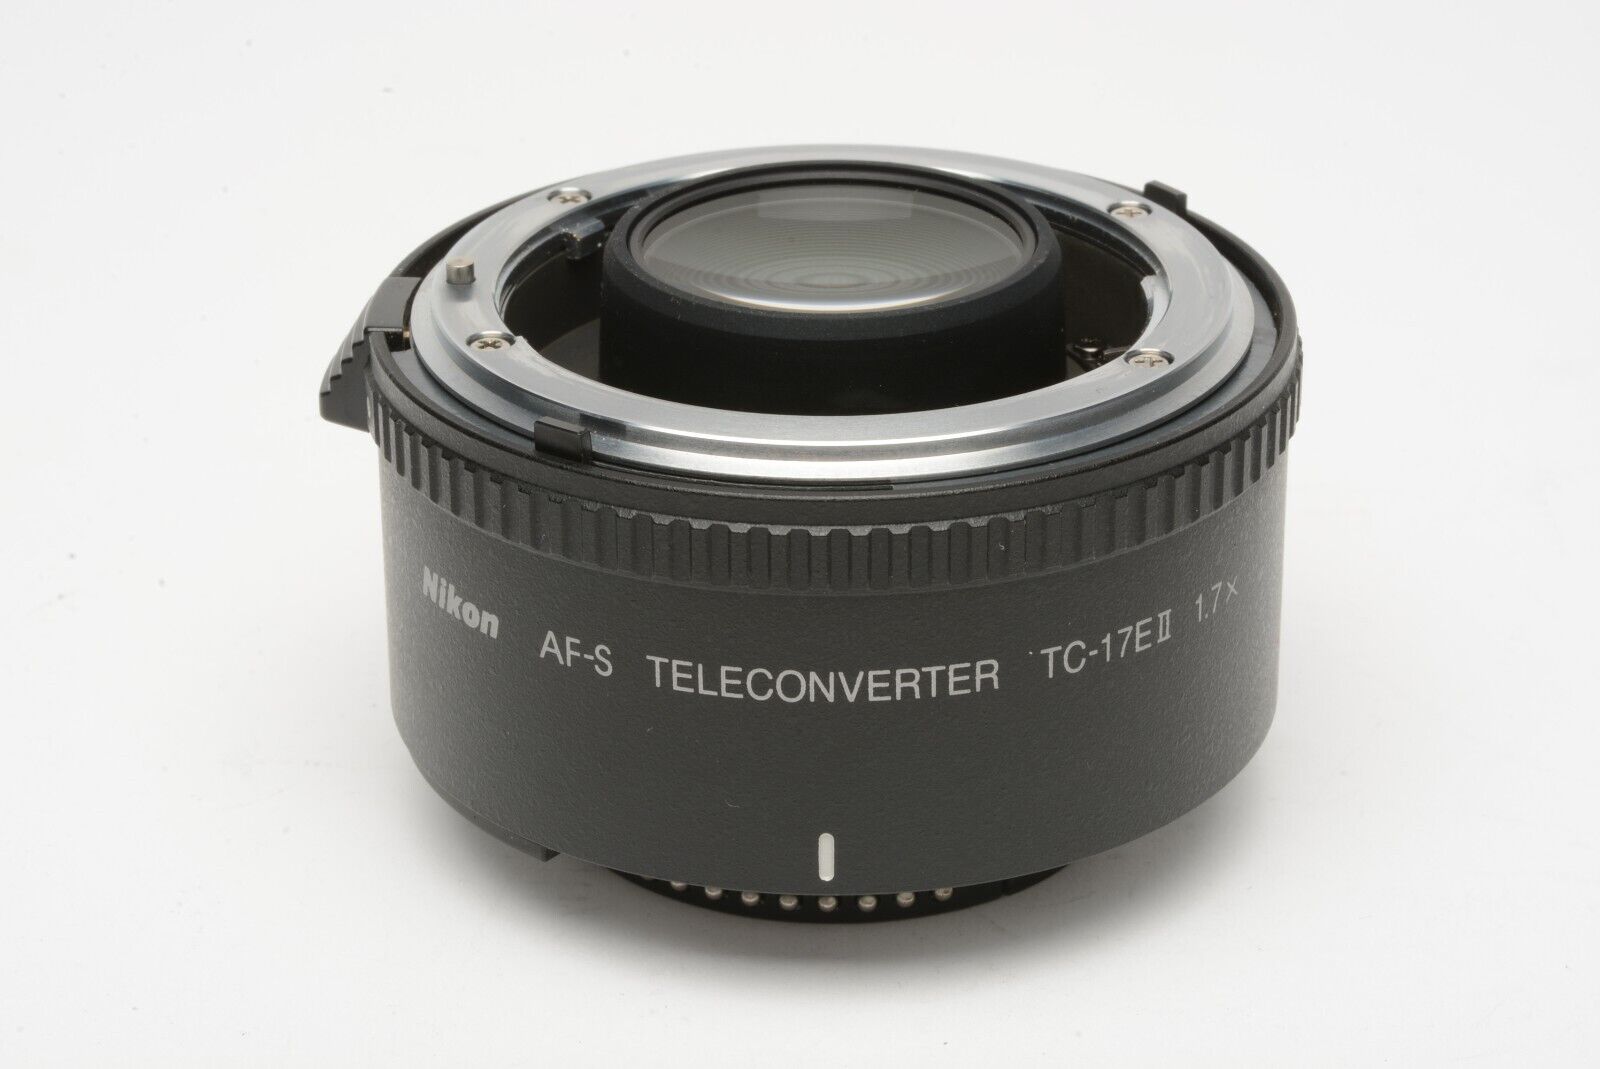 Nikon AF-S TELECONVERTER TC-17EⅡ